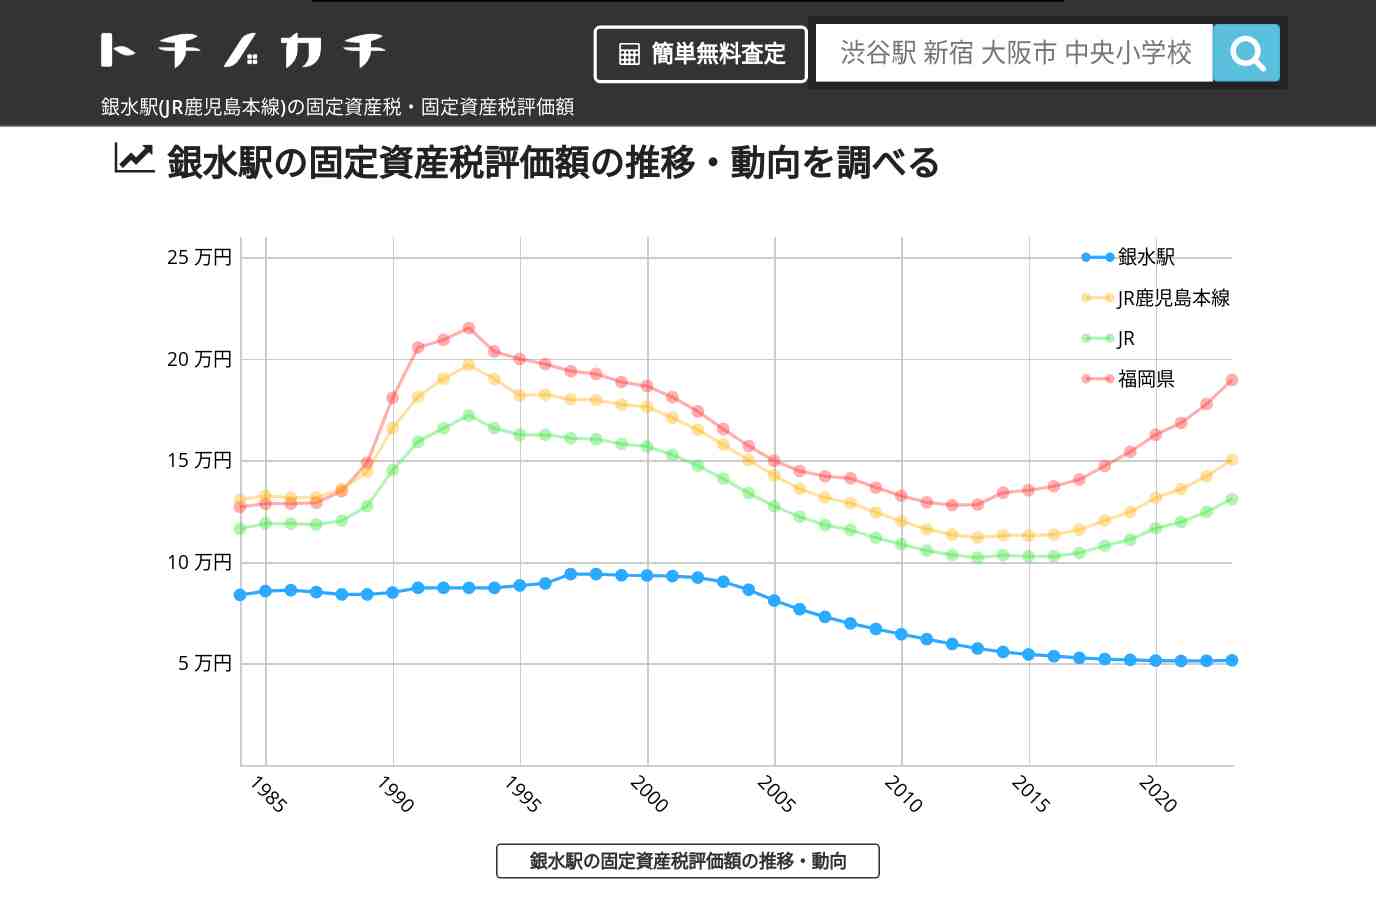 銀水駅(JR鹿児島本線)の固定資産税・固定資産税評価額 | トチノカチ